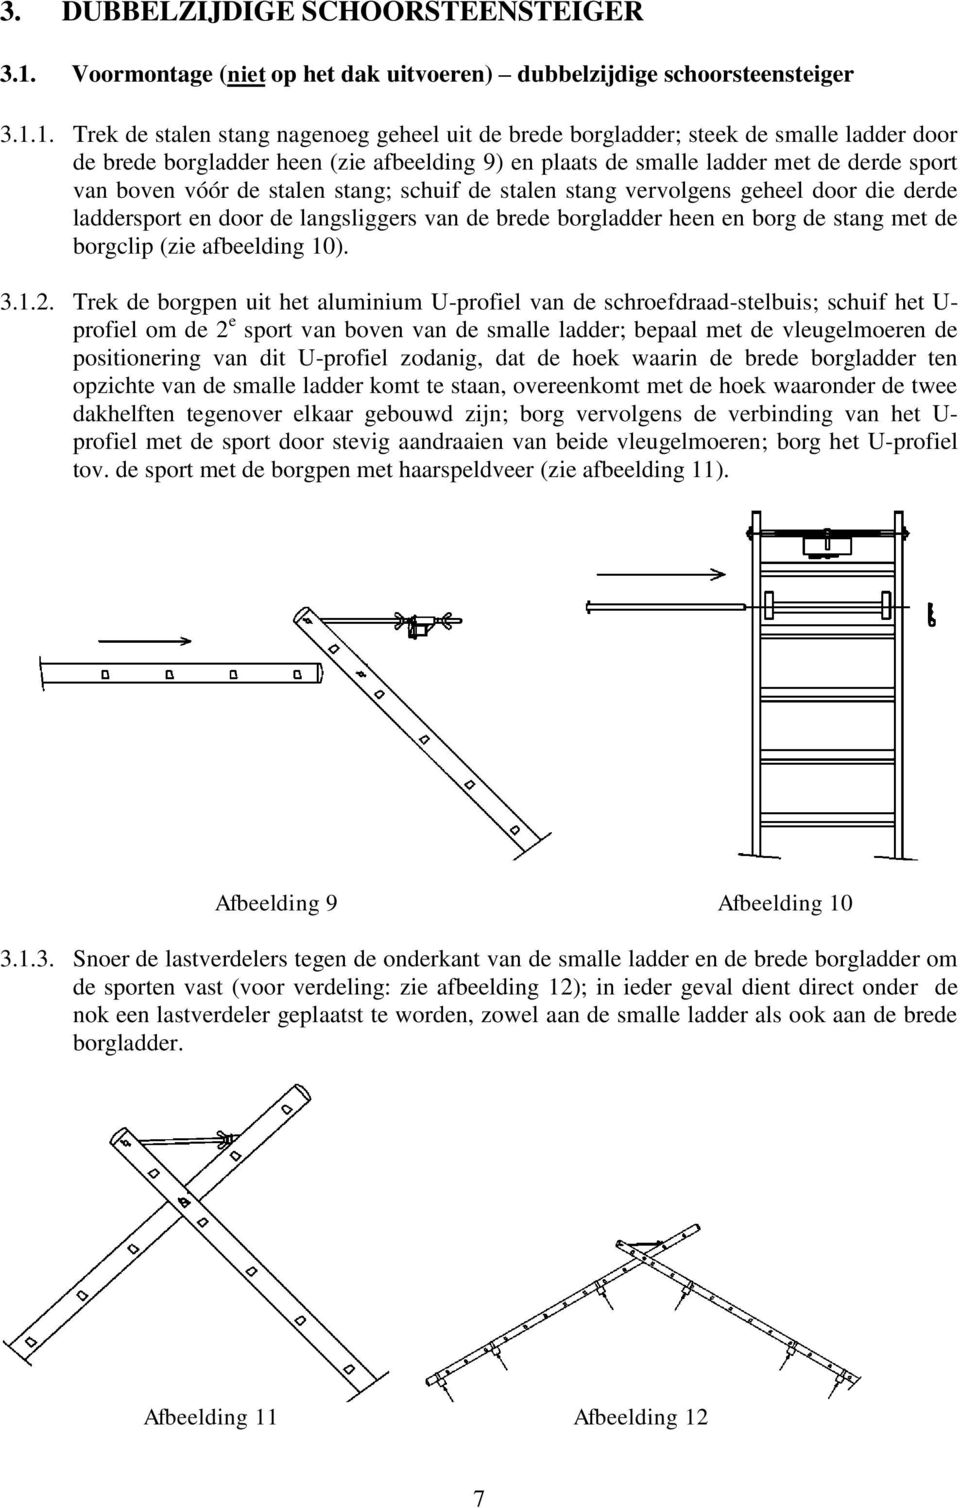 1. Trek de stalen stang nagenoeg geheel uit de brede borgladder; steek de smalle ladder door de brede borgladder heen (zie afbeelding 9) en plaats de smalle ladder met de derde sport van boven vóór